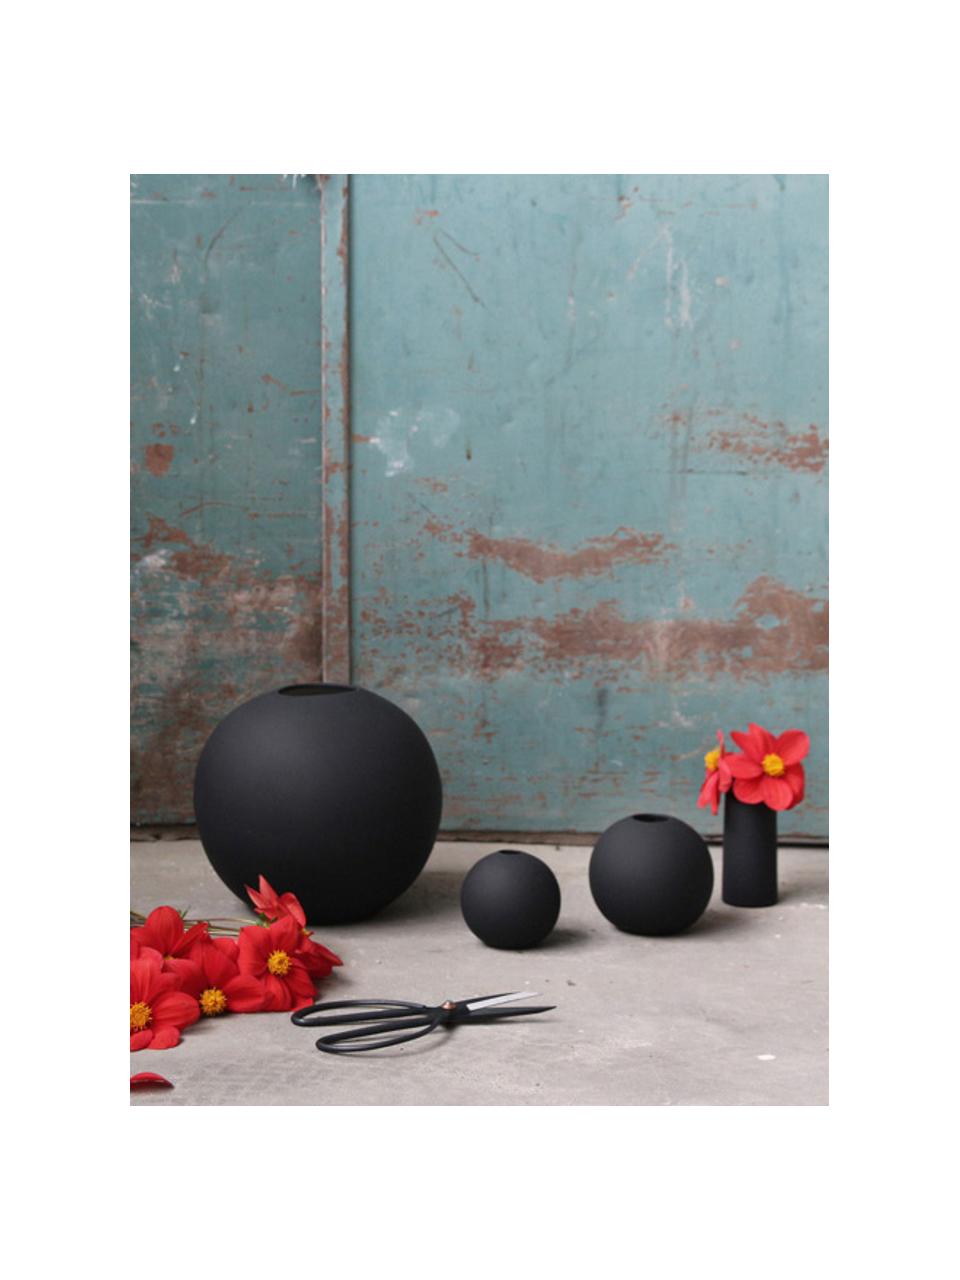 Kleine handgefertigte Kugel-Vase Ball in Schwarz, Keramik, Schwarz, Ø 10 x H 10 cm